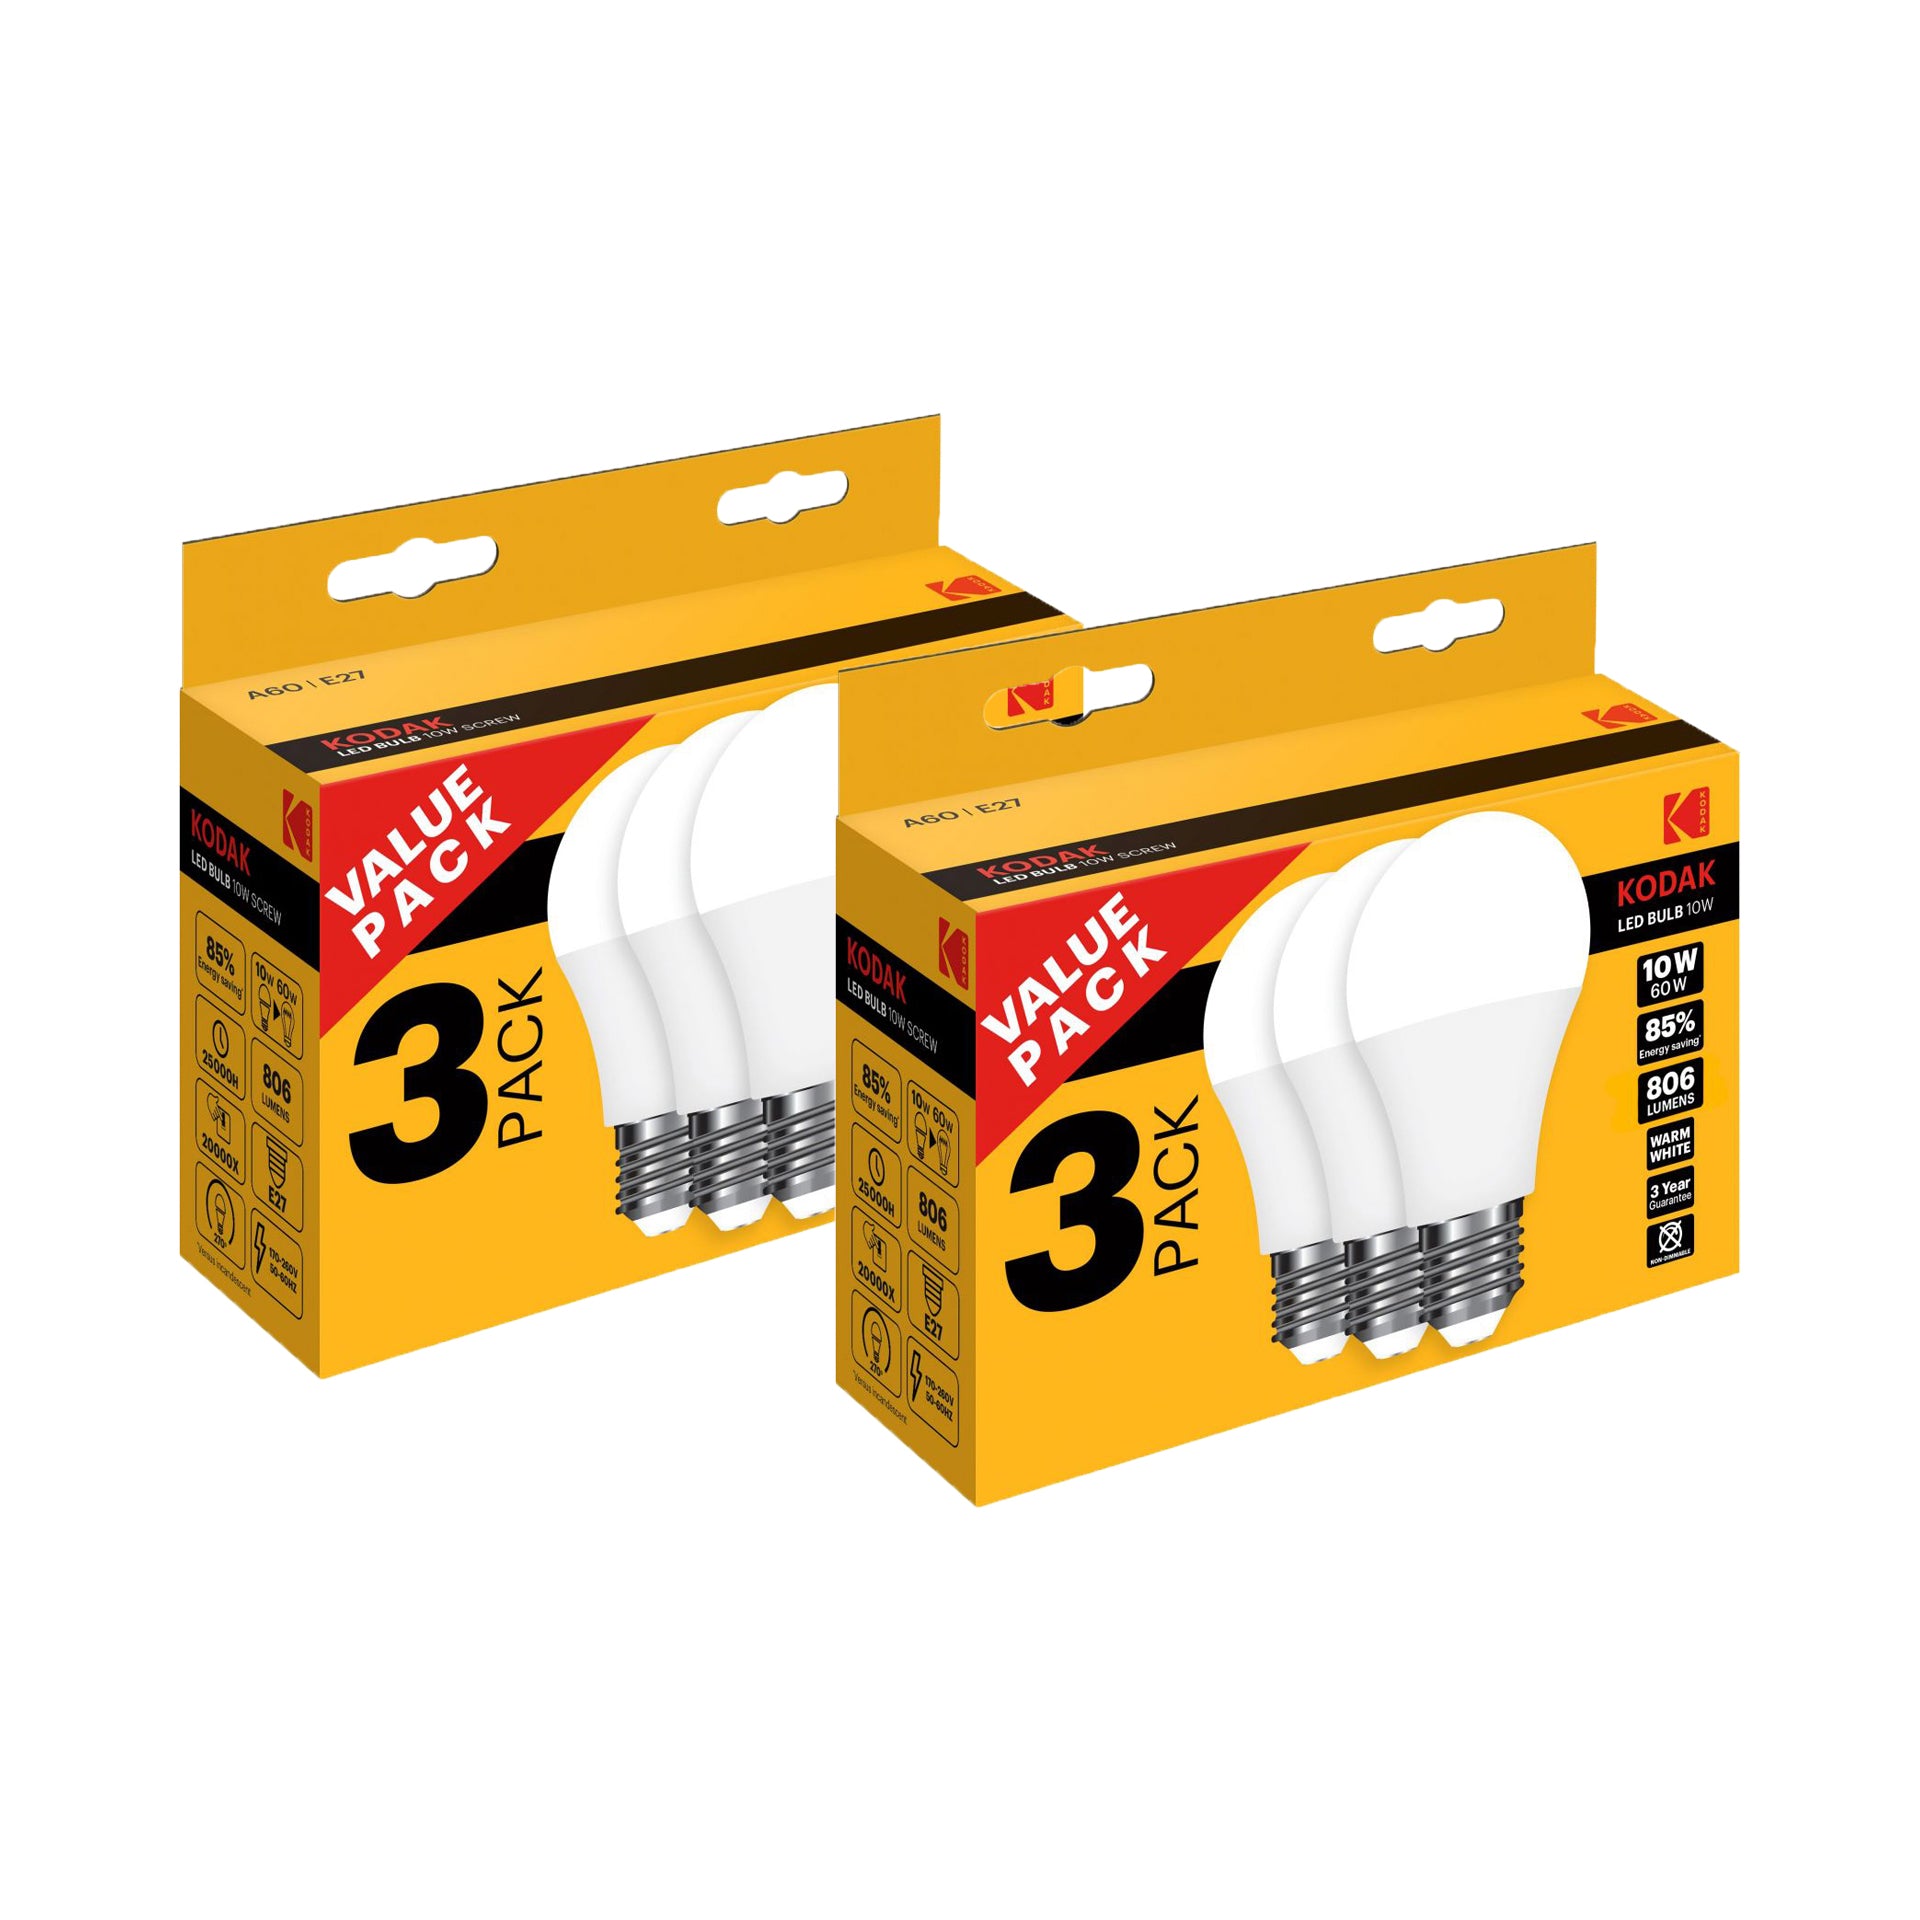 Kodak Pack Lâmpadas Led Esférica E27 Cor Branco Quente 10W 3 un - Pack 2 x 3 un